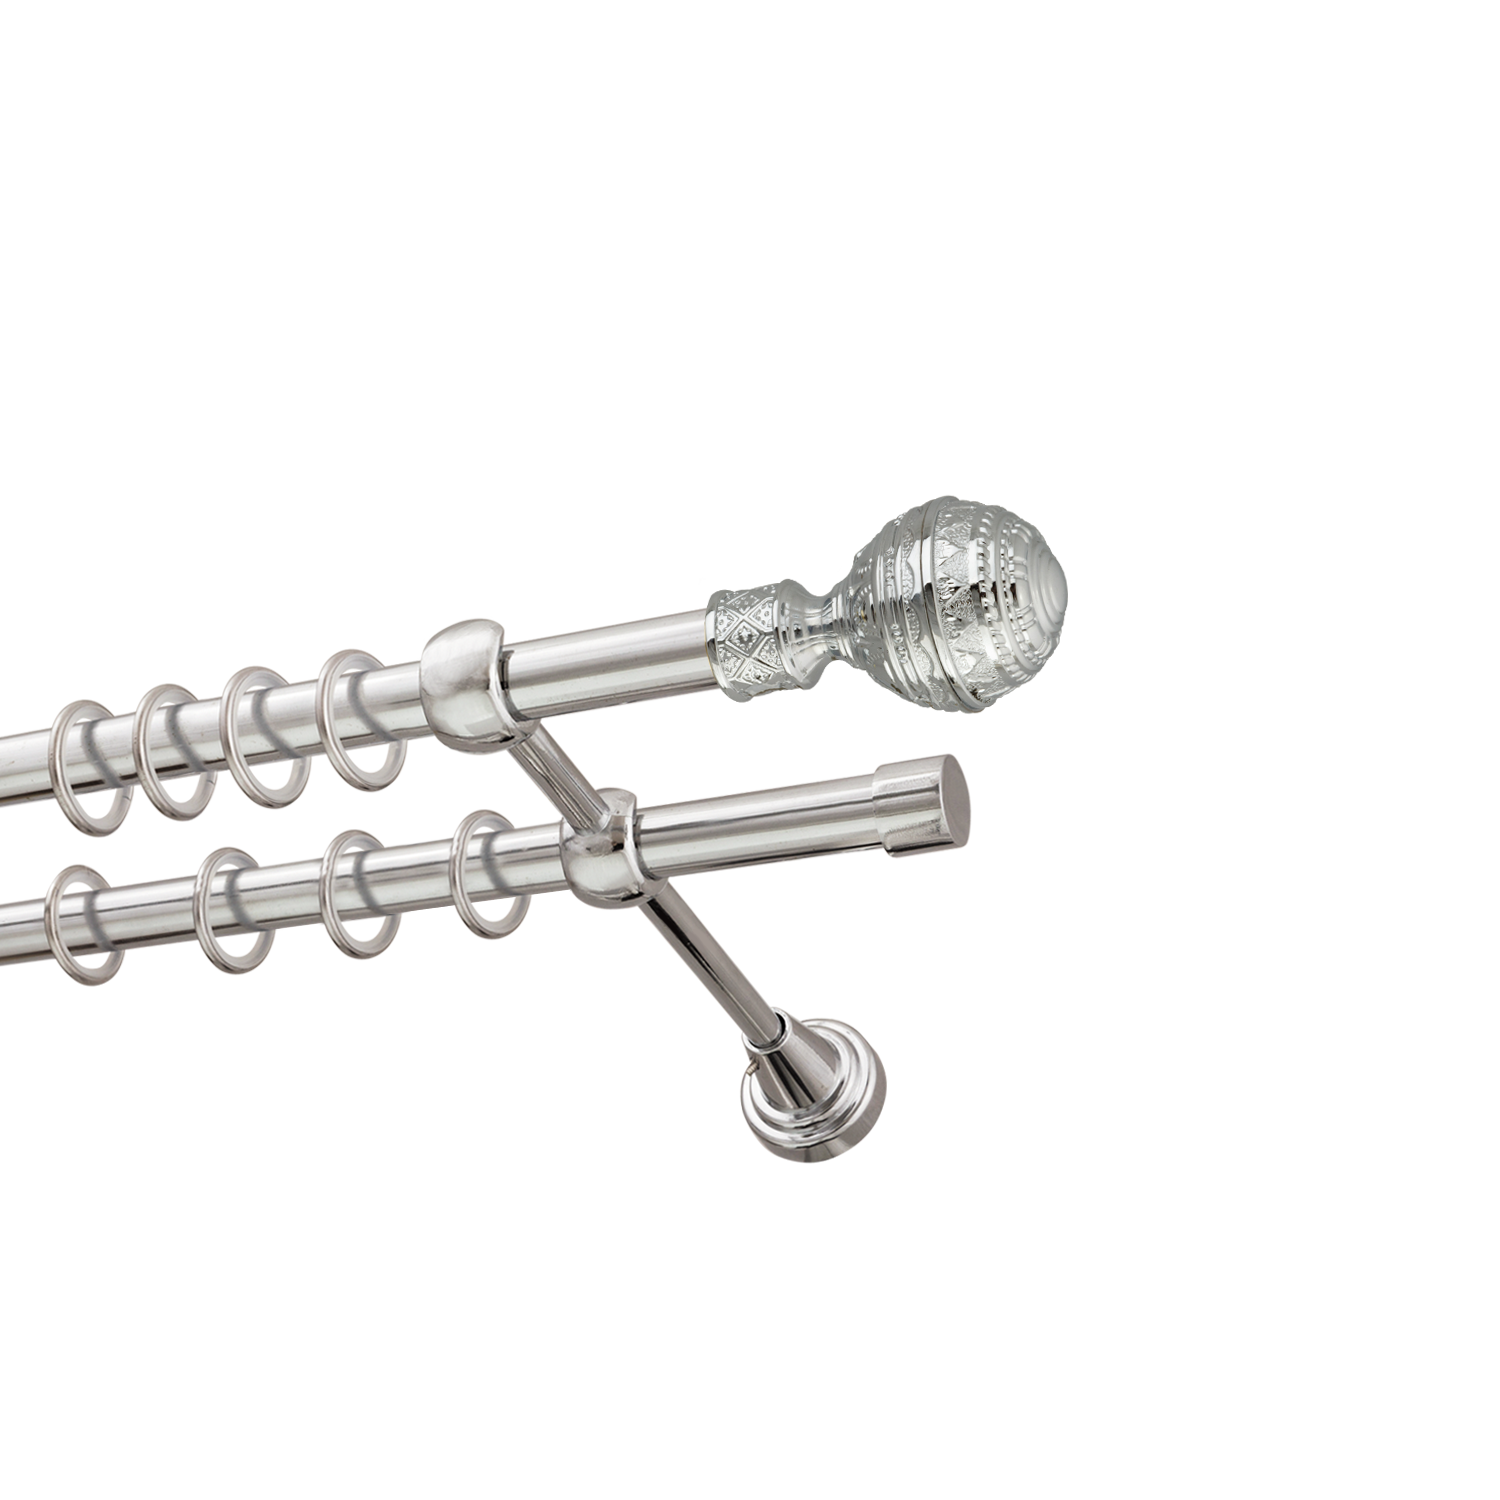 Металлический карниз для штор Роял, двухрядный 16/16 мм, серебро, гладкая штанга, длина 140 см